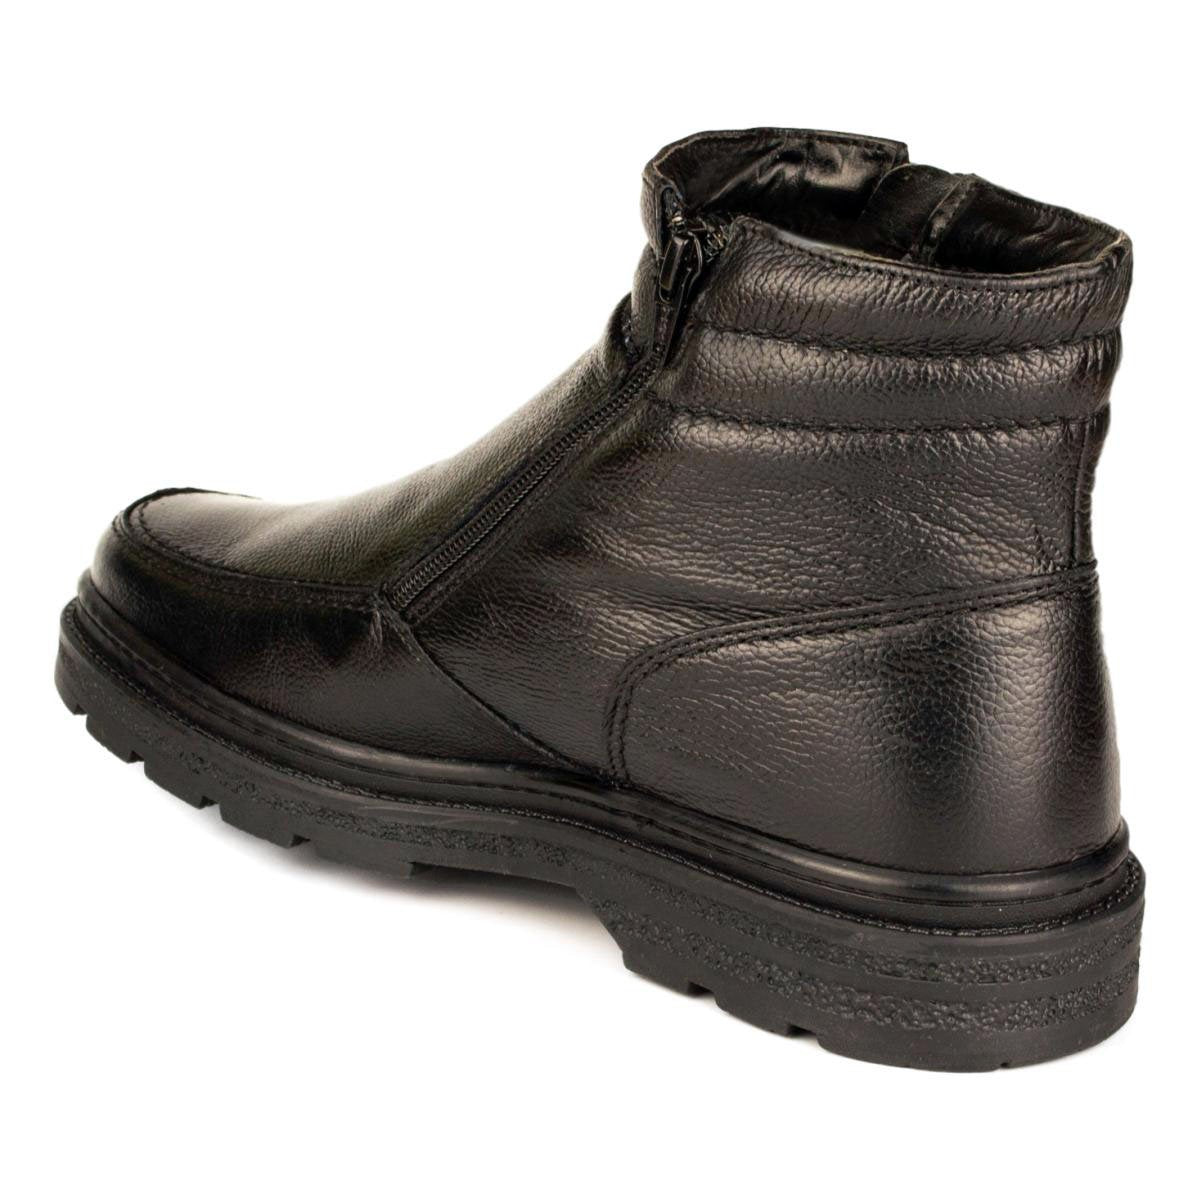 Mens Black Twin Zip Up Boot - Watney Shoes 